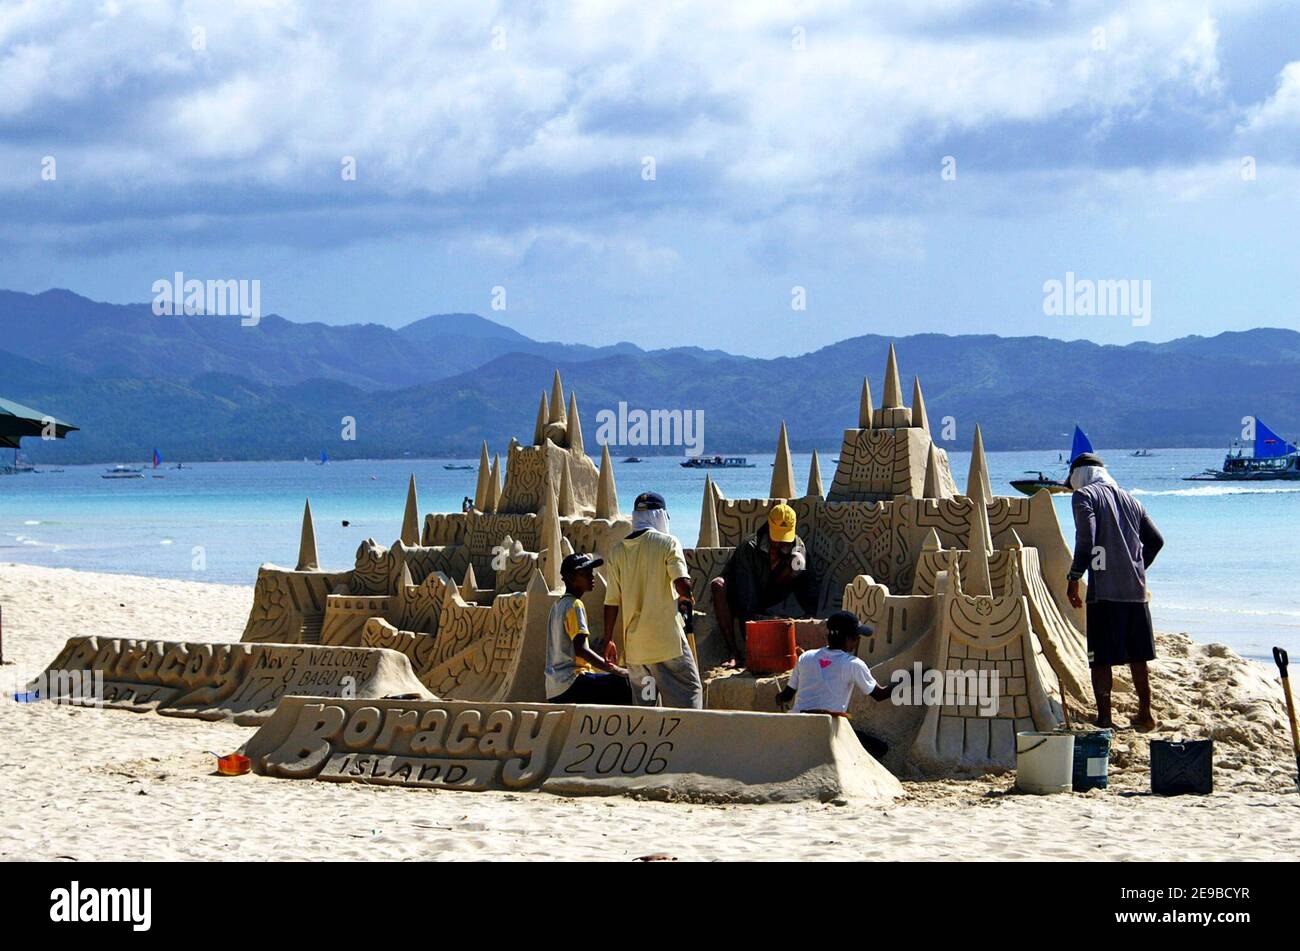 Les gens travaillent sur un château de sable élaboré sur White Beach à Boracay, aux Philippines. Le château de sable est juxtaposé aux collines lointaines et aux eaux bleues au large de l'île Boracay. Banque D'Images